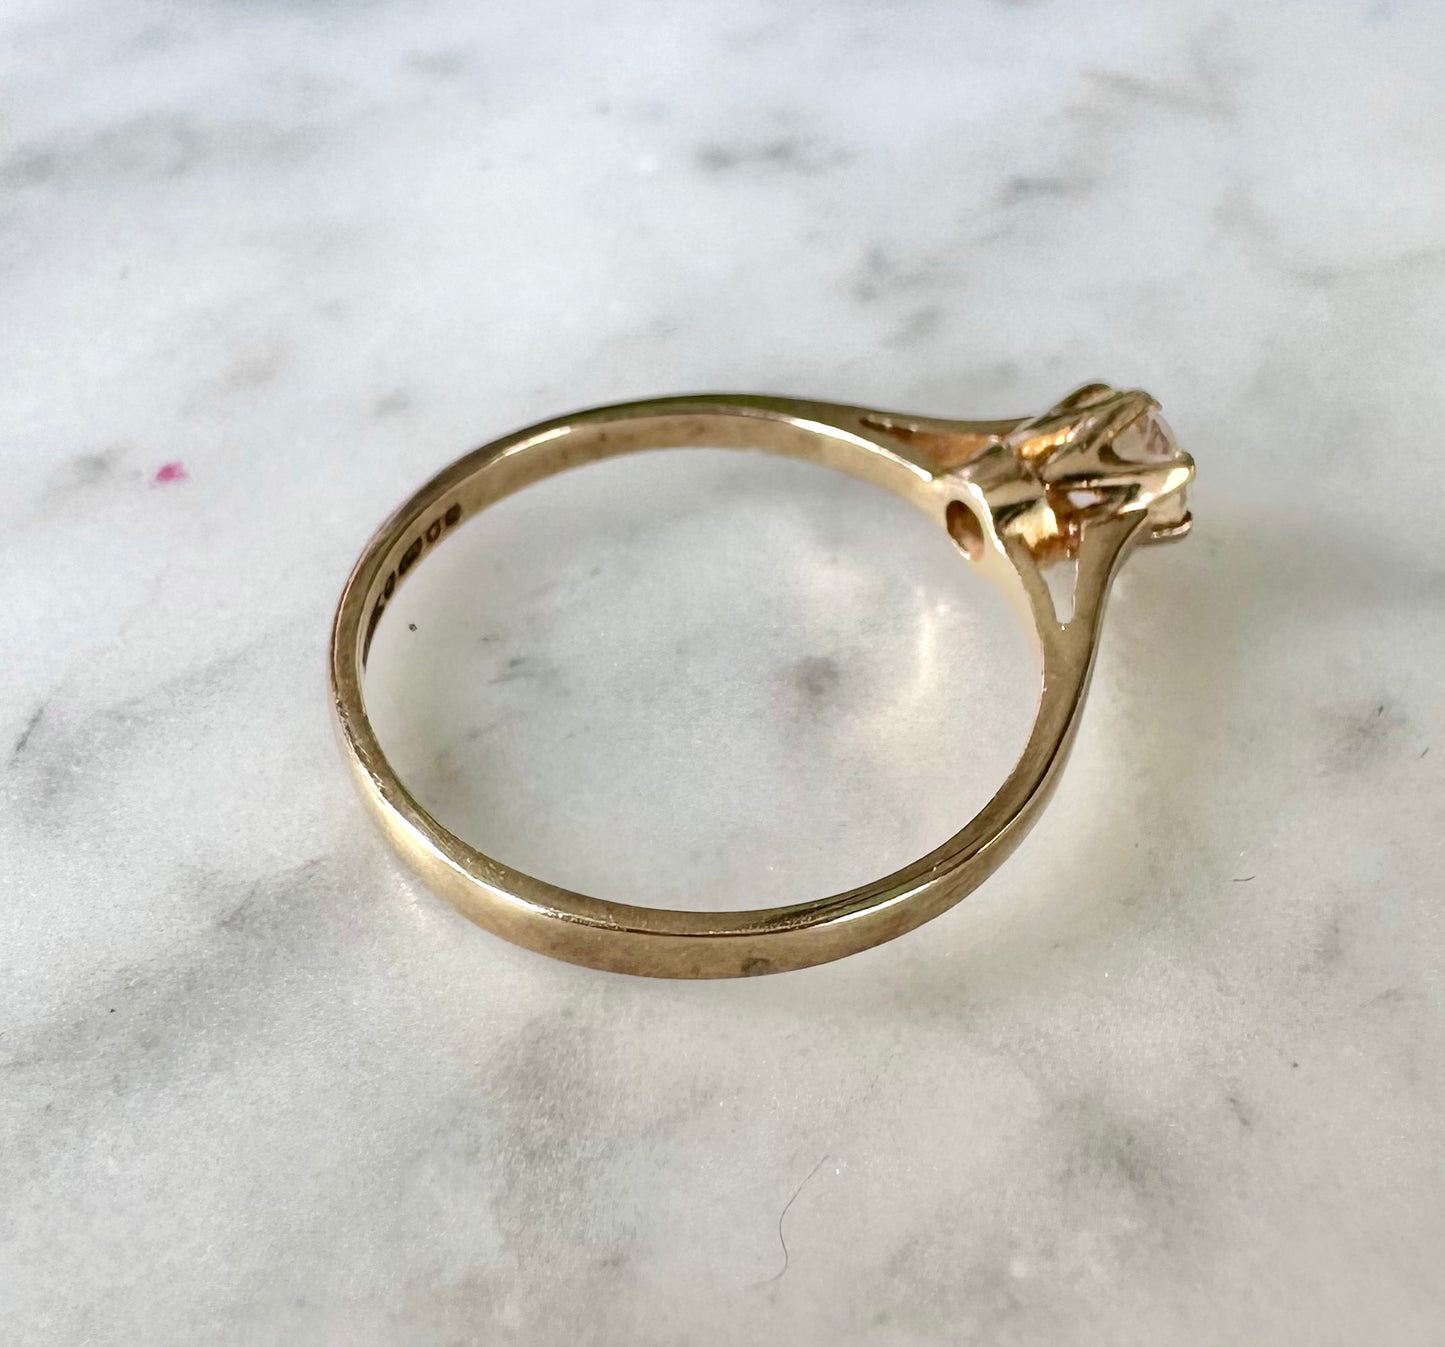 Antique Diamond Solitaire Ring